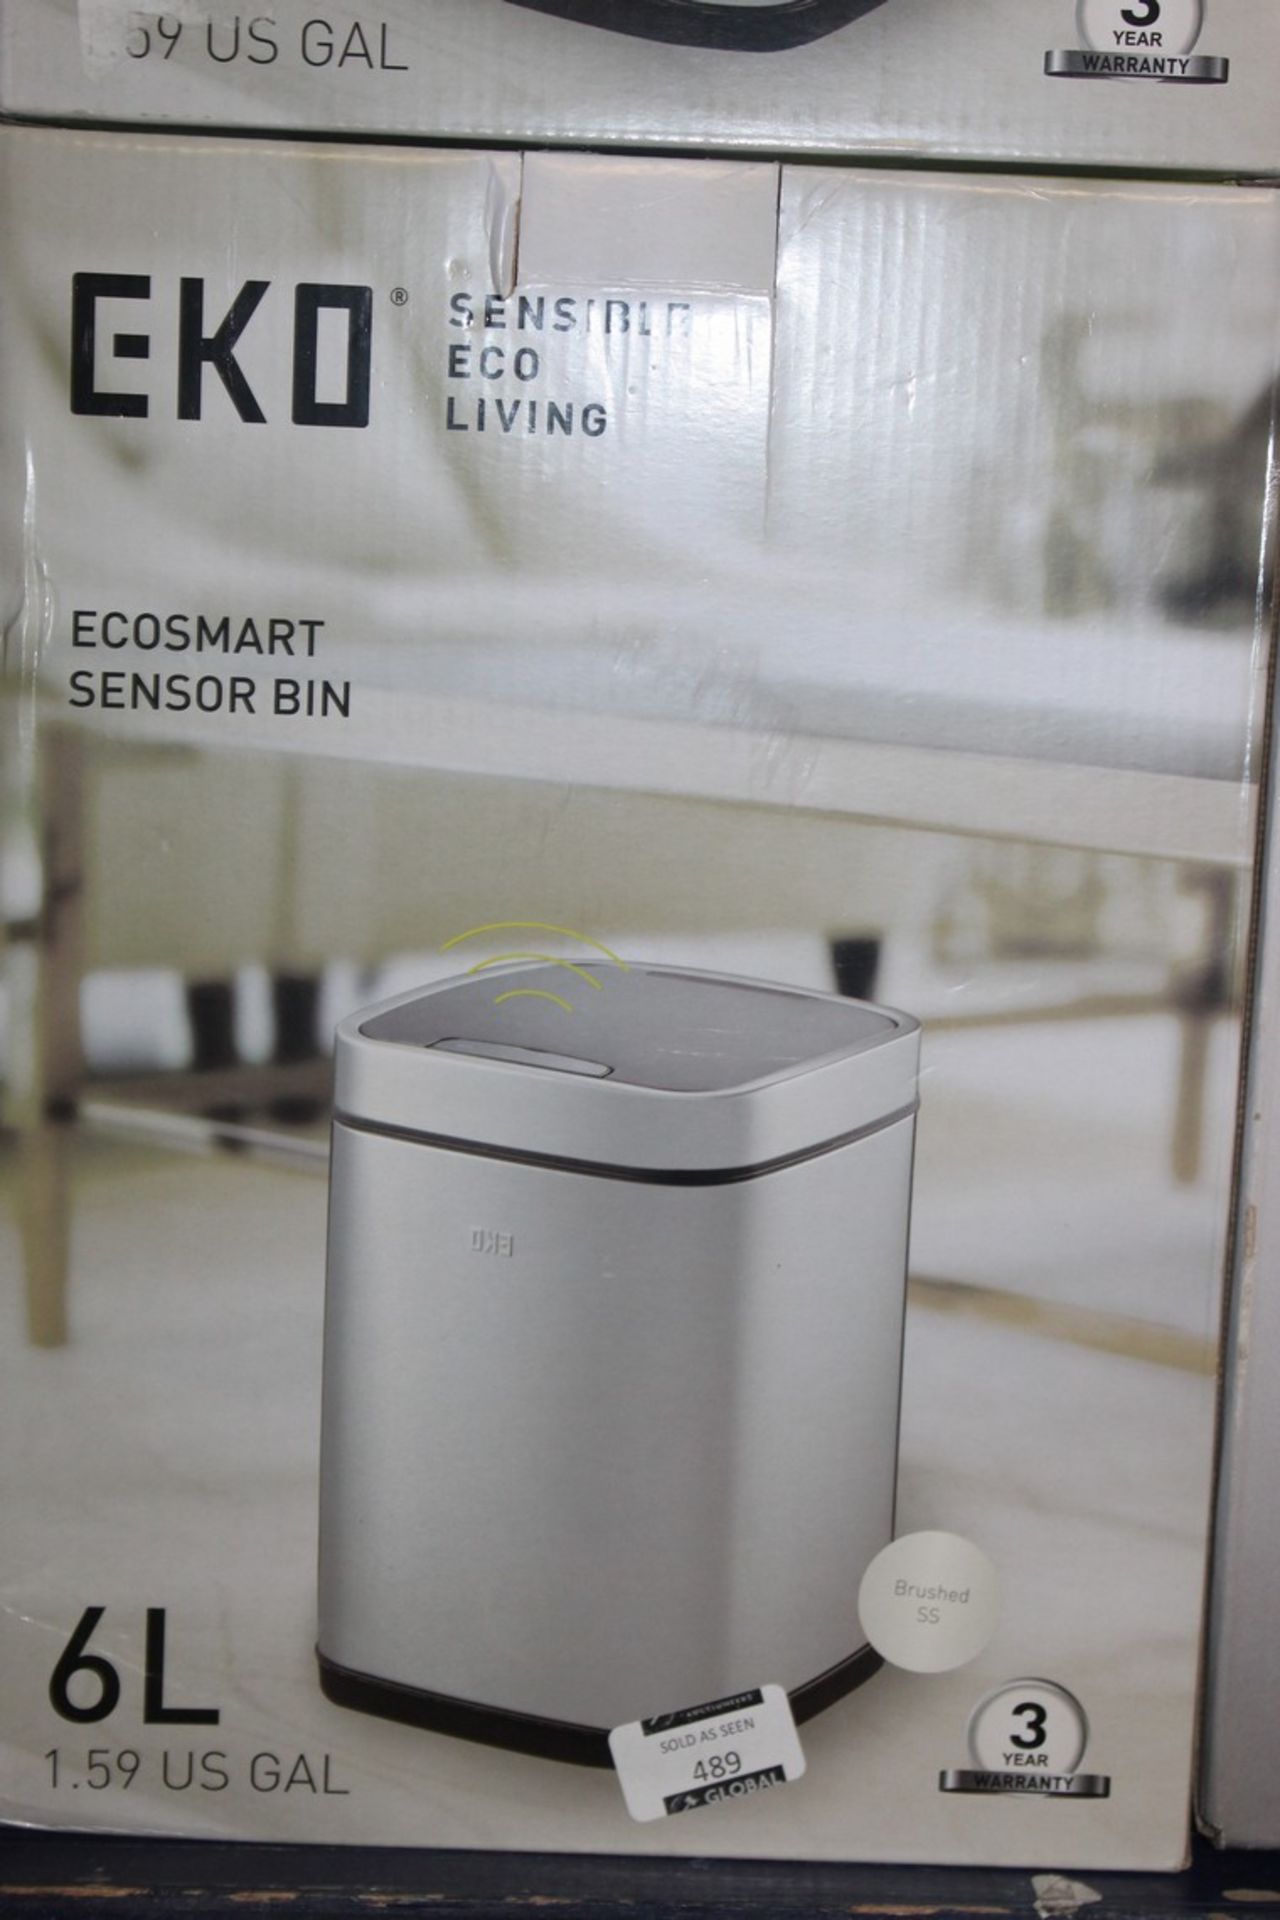 Boxed Eko Sensible Eco Living 6L Smart Sensor Bins